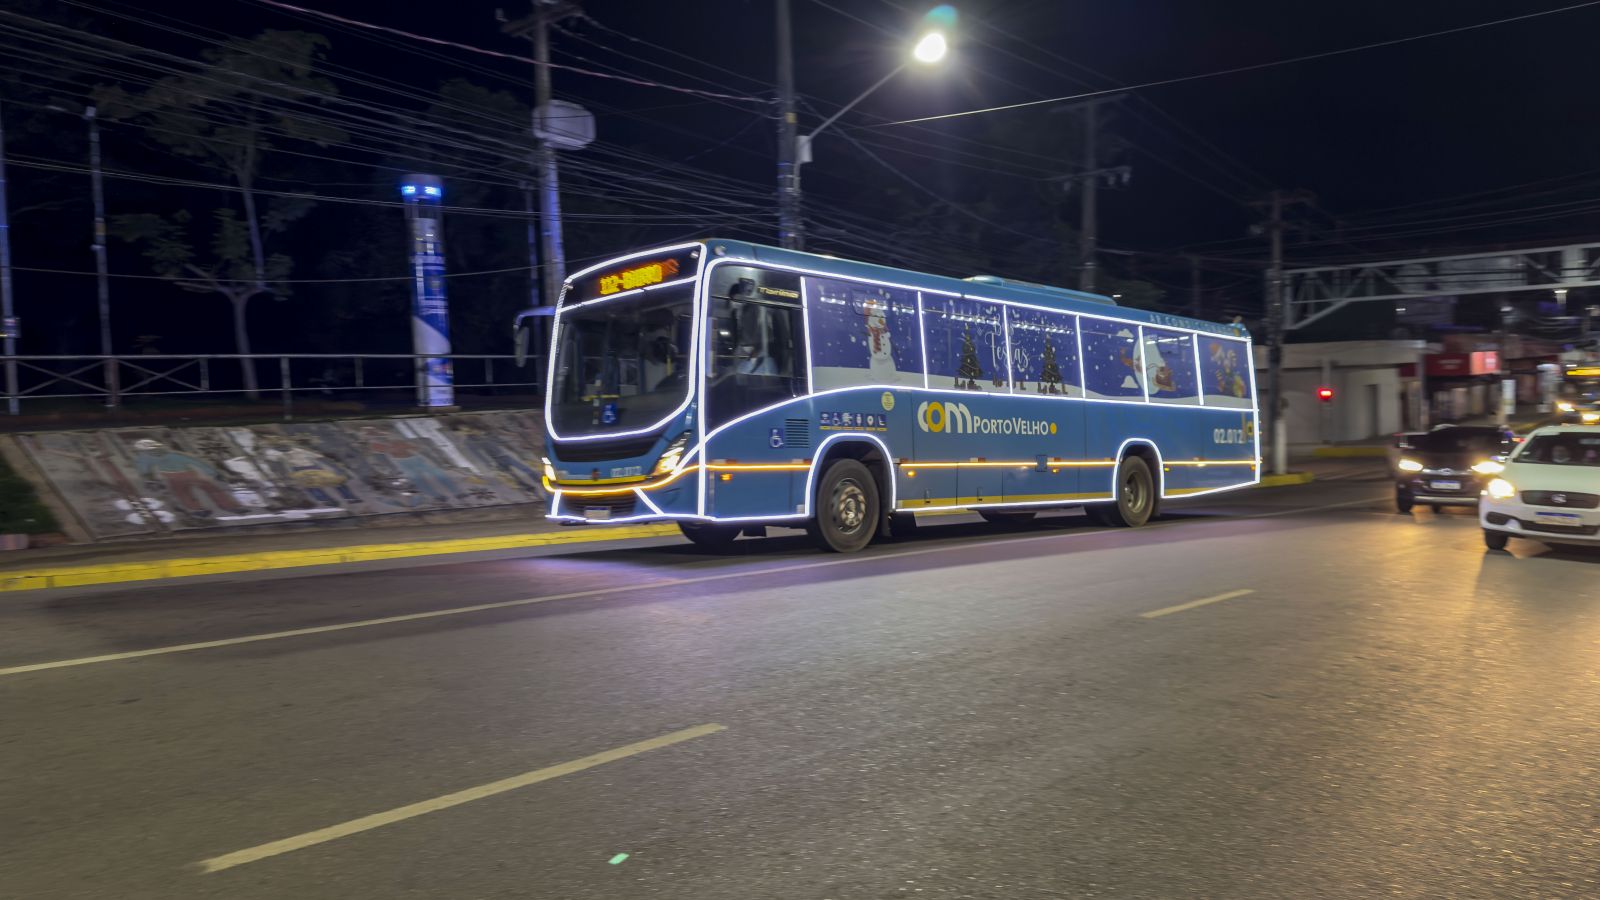 CLIMA DE FESTA: Ônibus com iluminação de LED especial levam o espírito natalino para Porto Velho